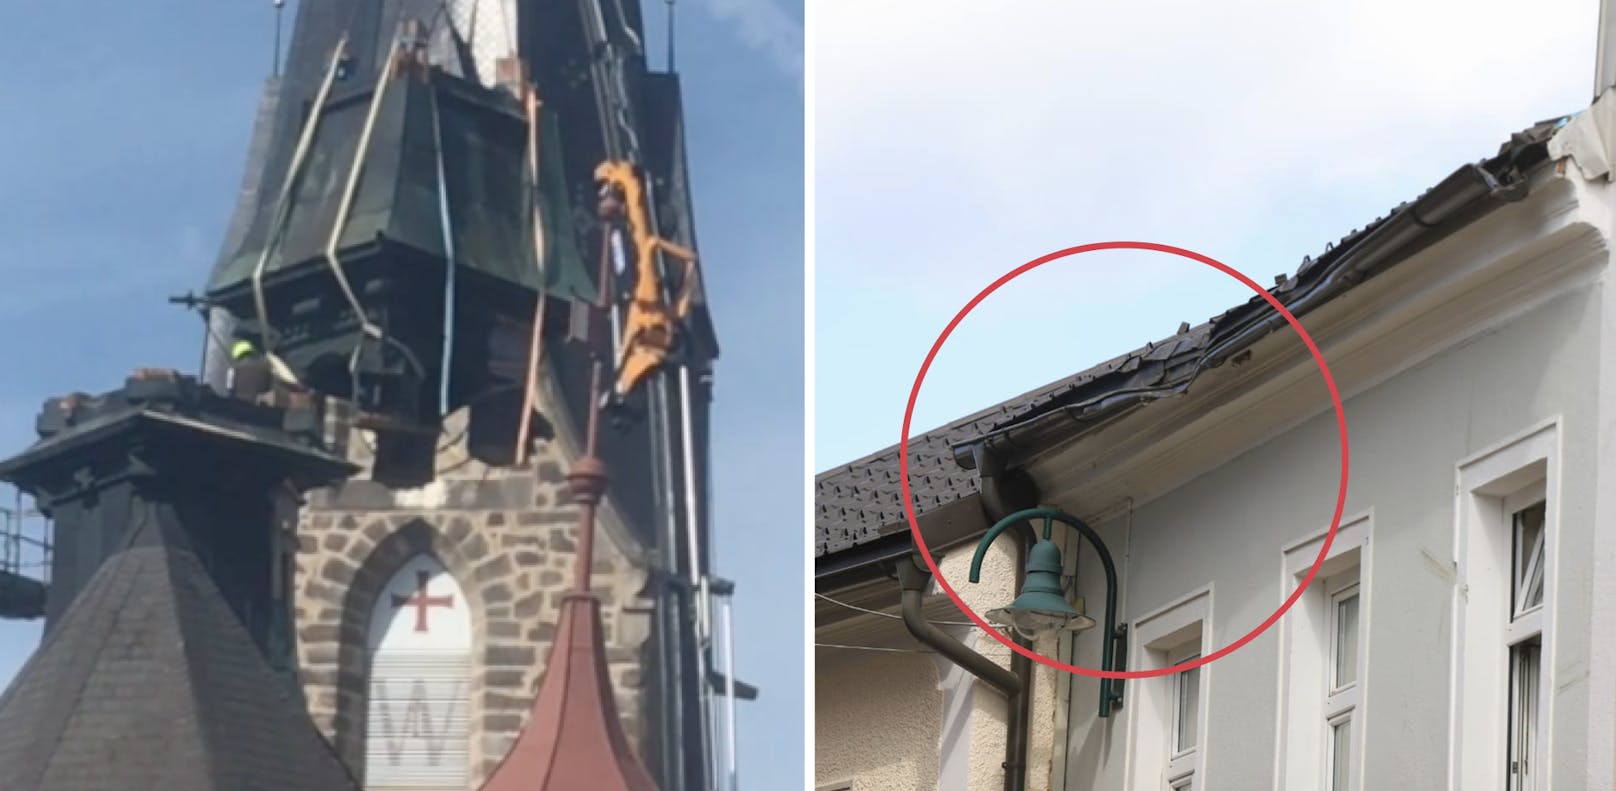 Der Kran gab nach, der Kirchturm stürzte ab und beschädigte das Dach des Rathauses in Bad Leonfelden.